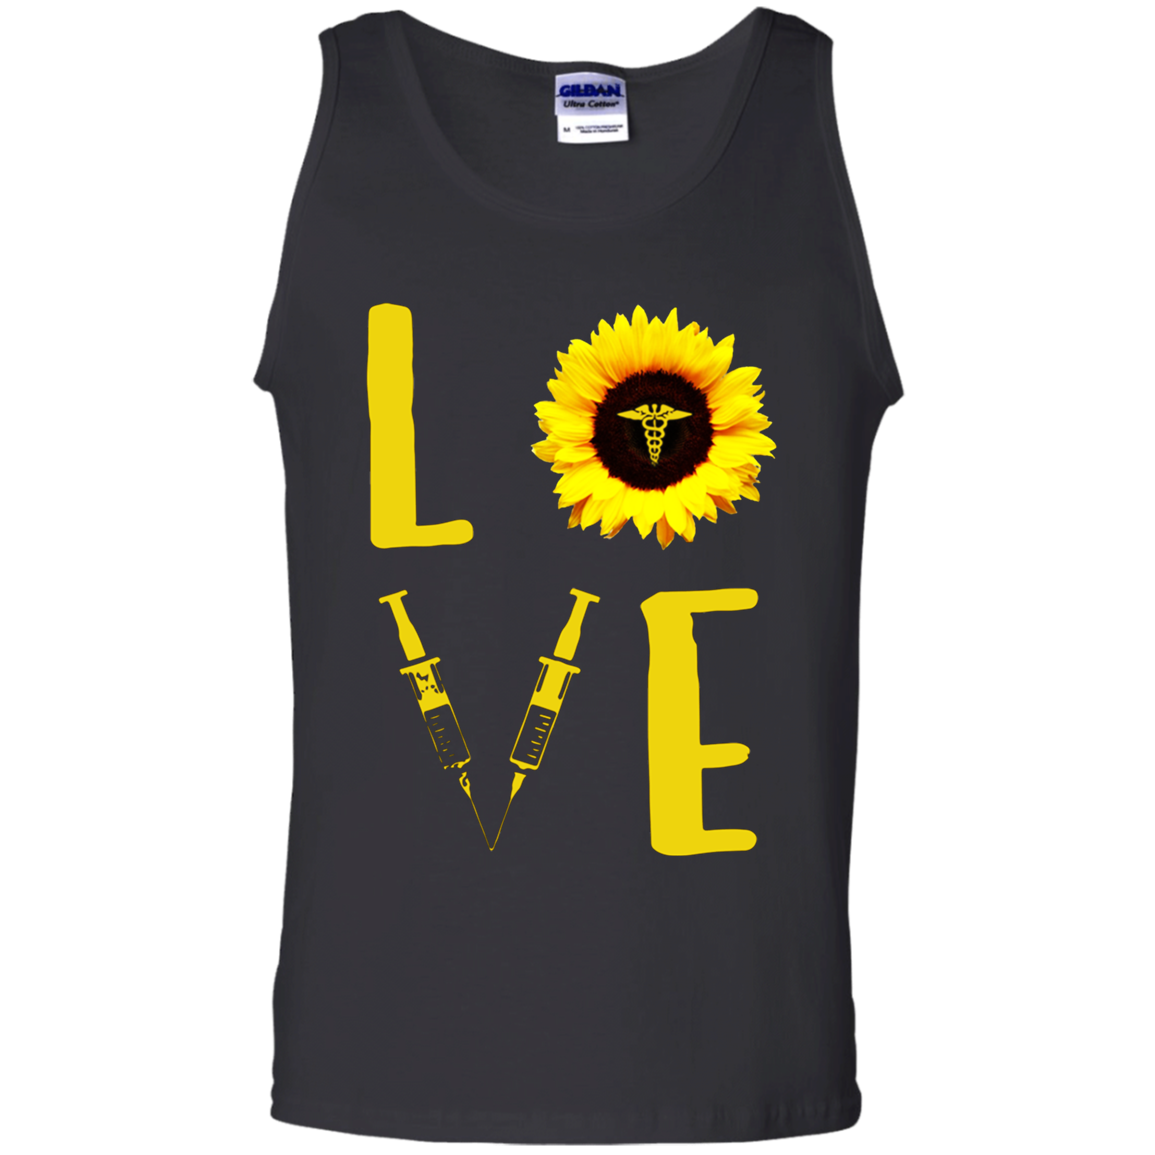 Nurse Love Sunflower Shirt G220 Tank Top